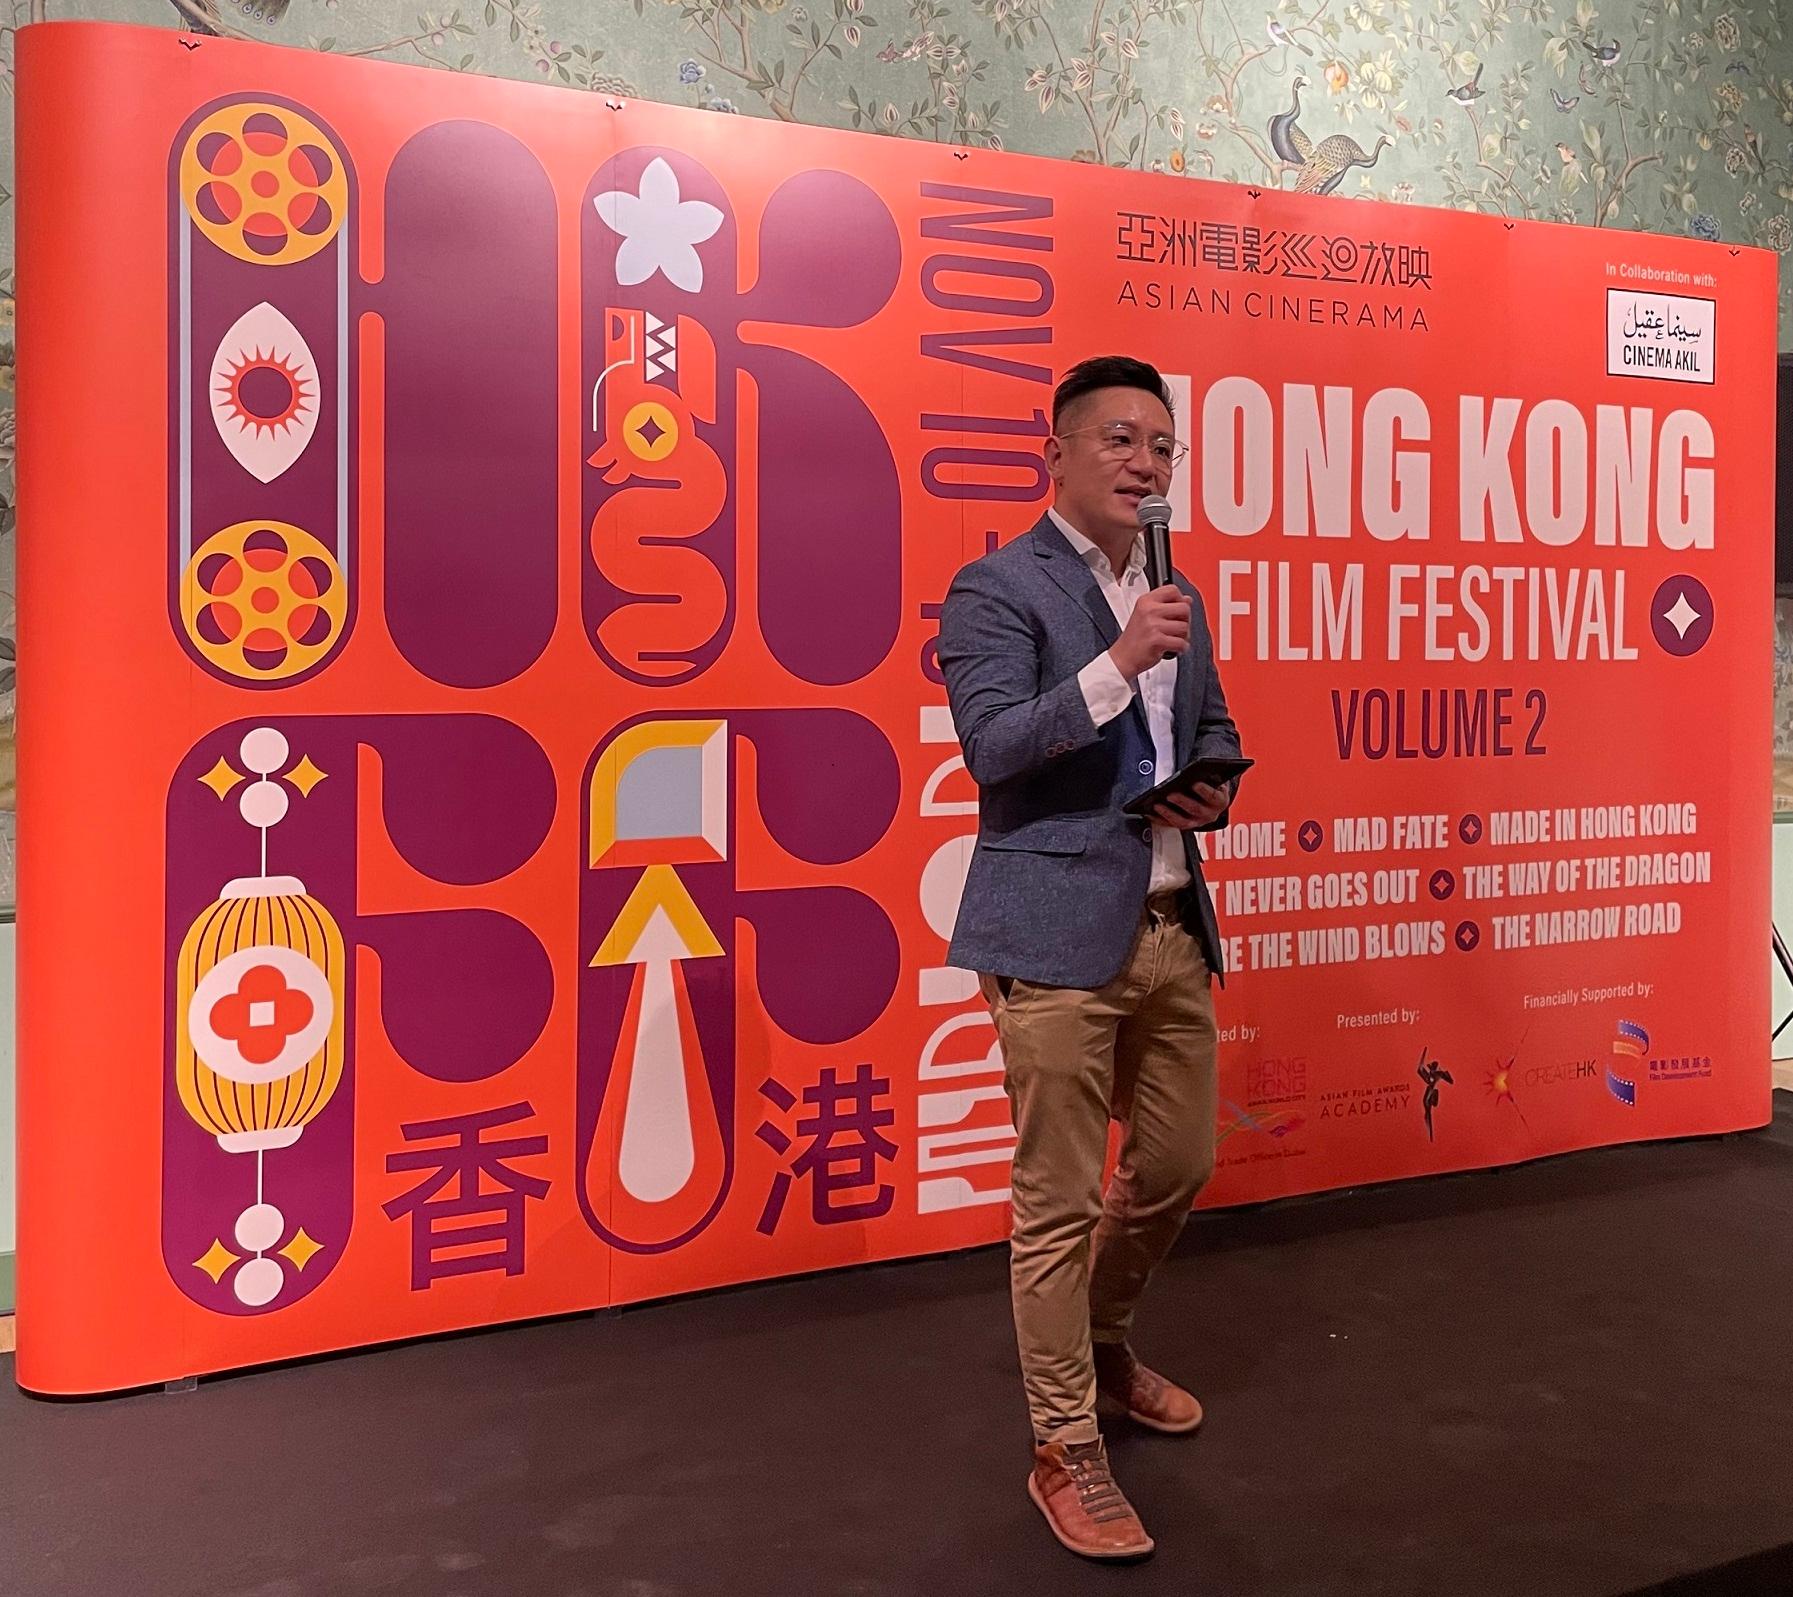 在香港駐迪拜經濟貿易辦事處（駐迪拜經貿辦）、創意香港和「電影發展基金」的支持下，迪拜連續第二年於十一月舉辦電影節推廣香港電影。是次「亞洲電影巡迴放映：香港電影節」由亞洲電影大獎學院主辦，向當地觀眾展示一系列全新和修復的香港電影。圖示駐迪拜經貿辦處長李國雄在駐迪拜經貿辦的活動開幕酒會上致辭。